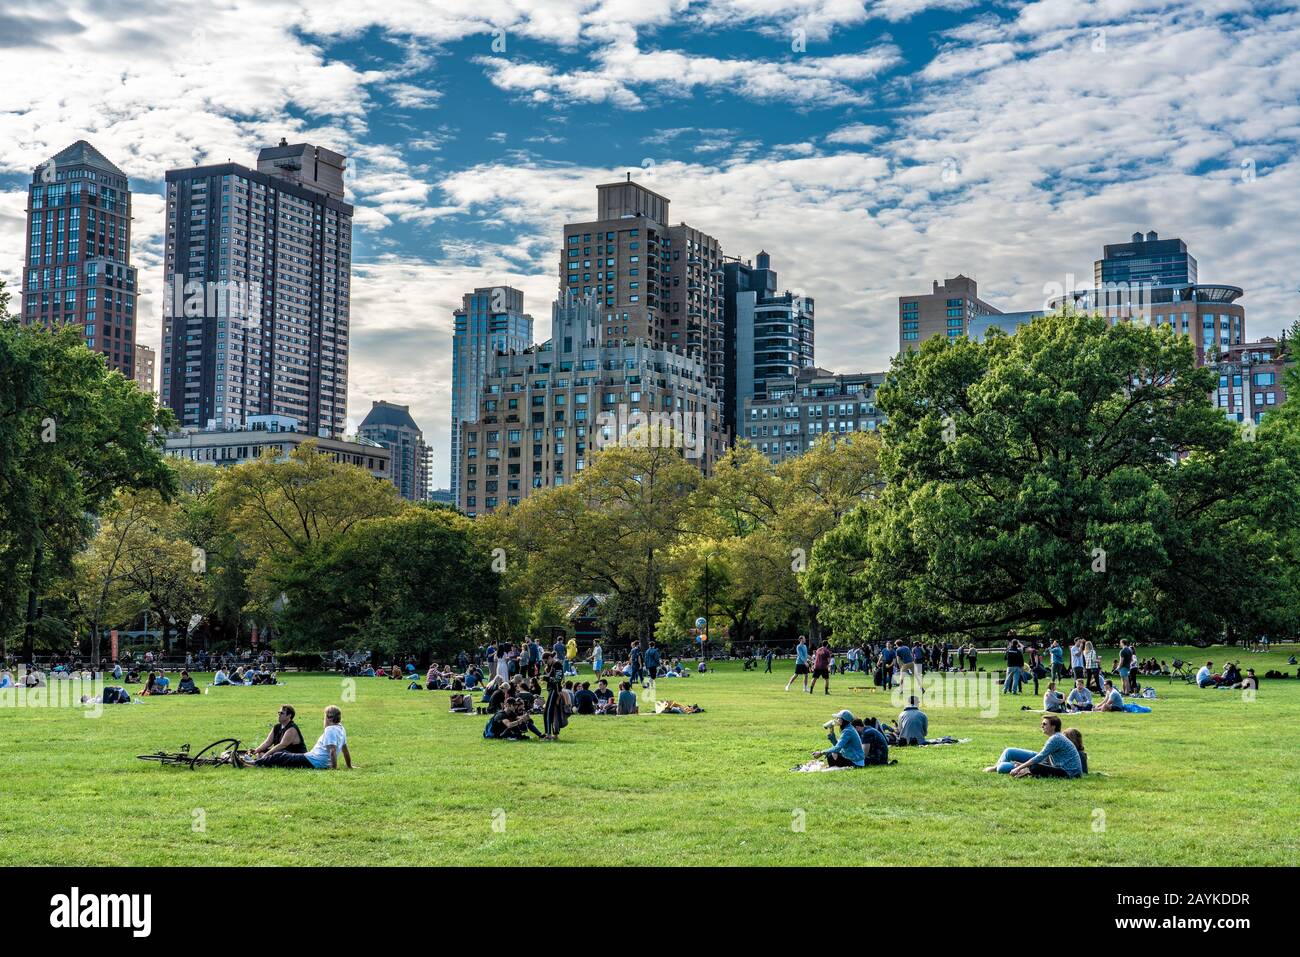 New YORK, USA - 12. OKTOBER: Das ist Sheep Meadow, ein Außenbereich, in dem Menschen zum Sonnenbad kommen und am 12. Oktober 2019 im Central Park Picknicks haben Stockfoto